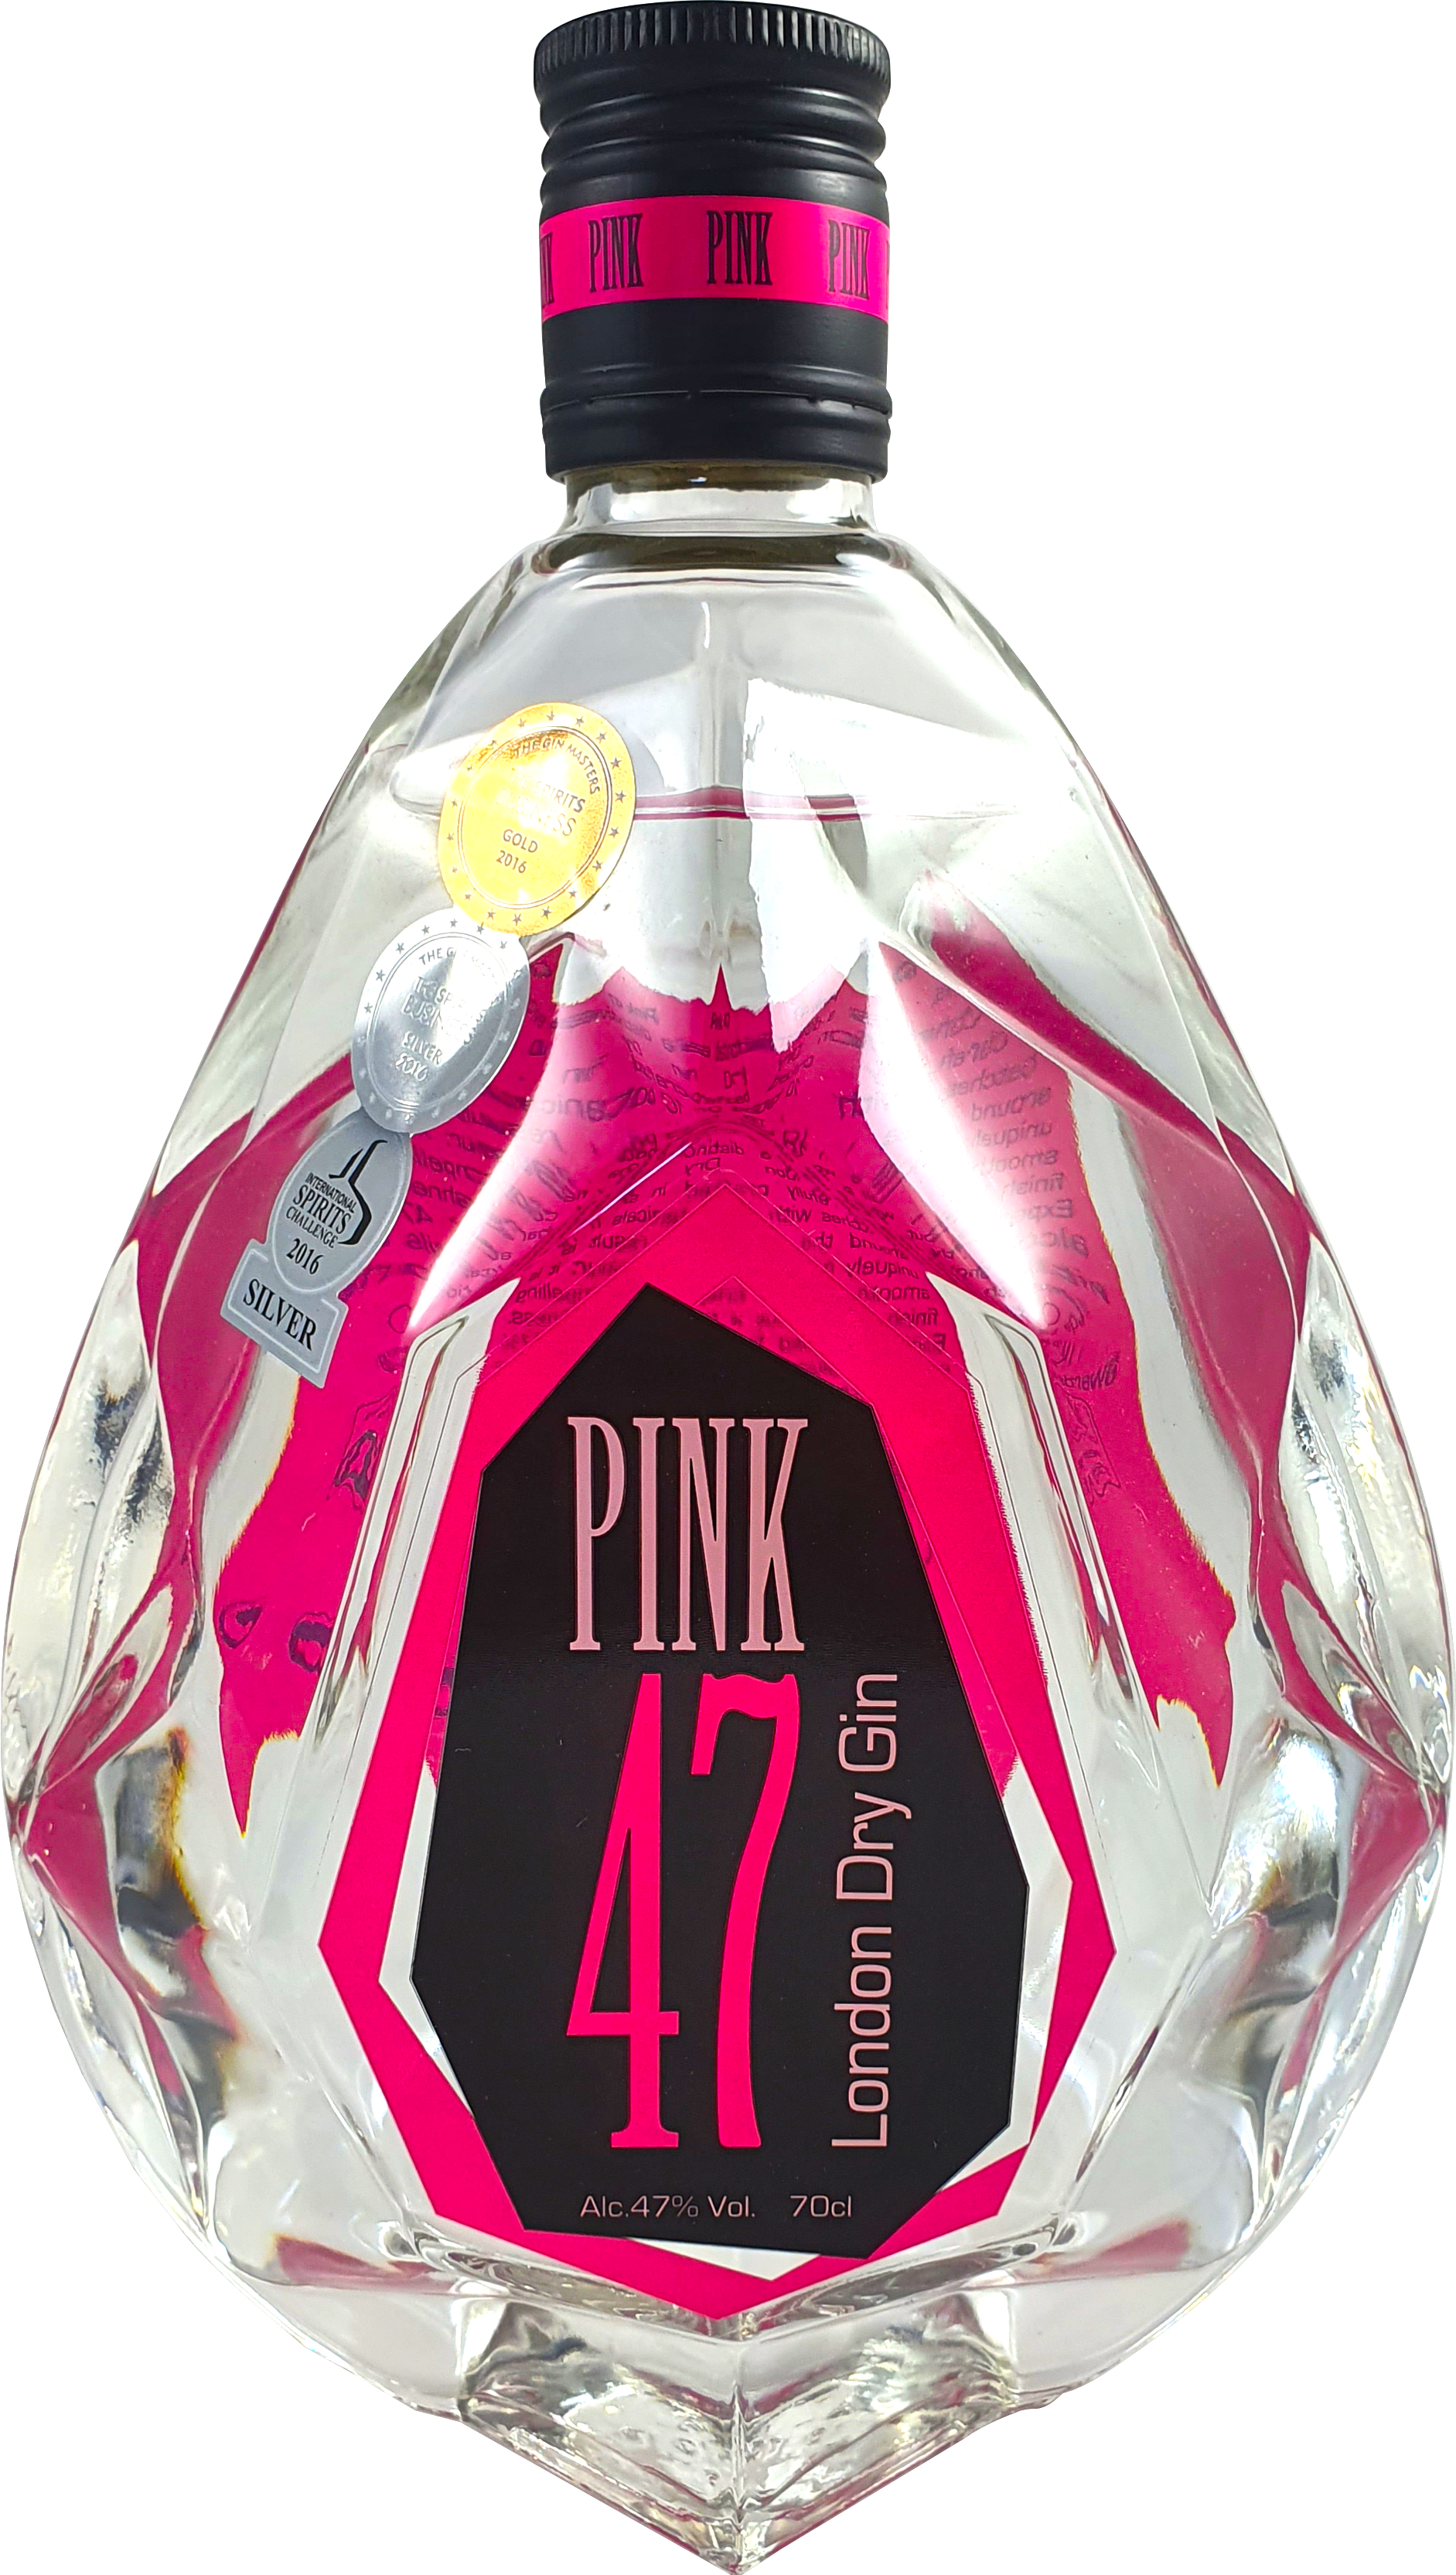 Pink 47 Ld Gin 47% 